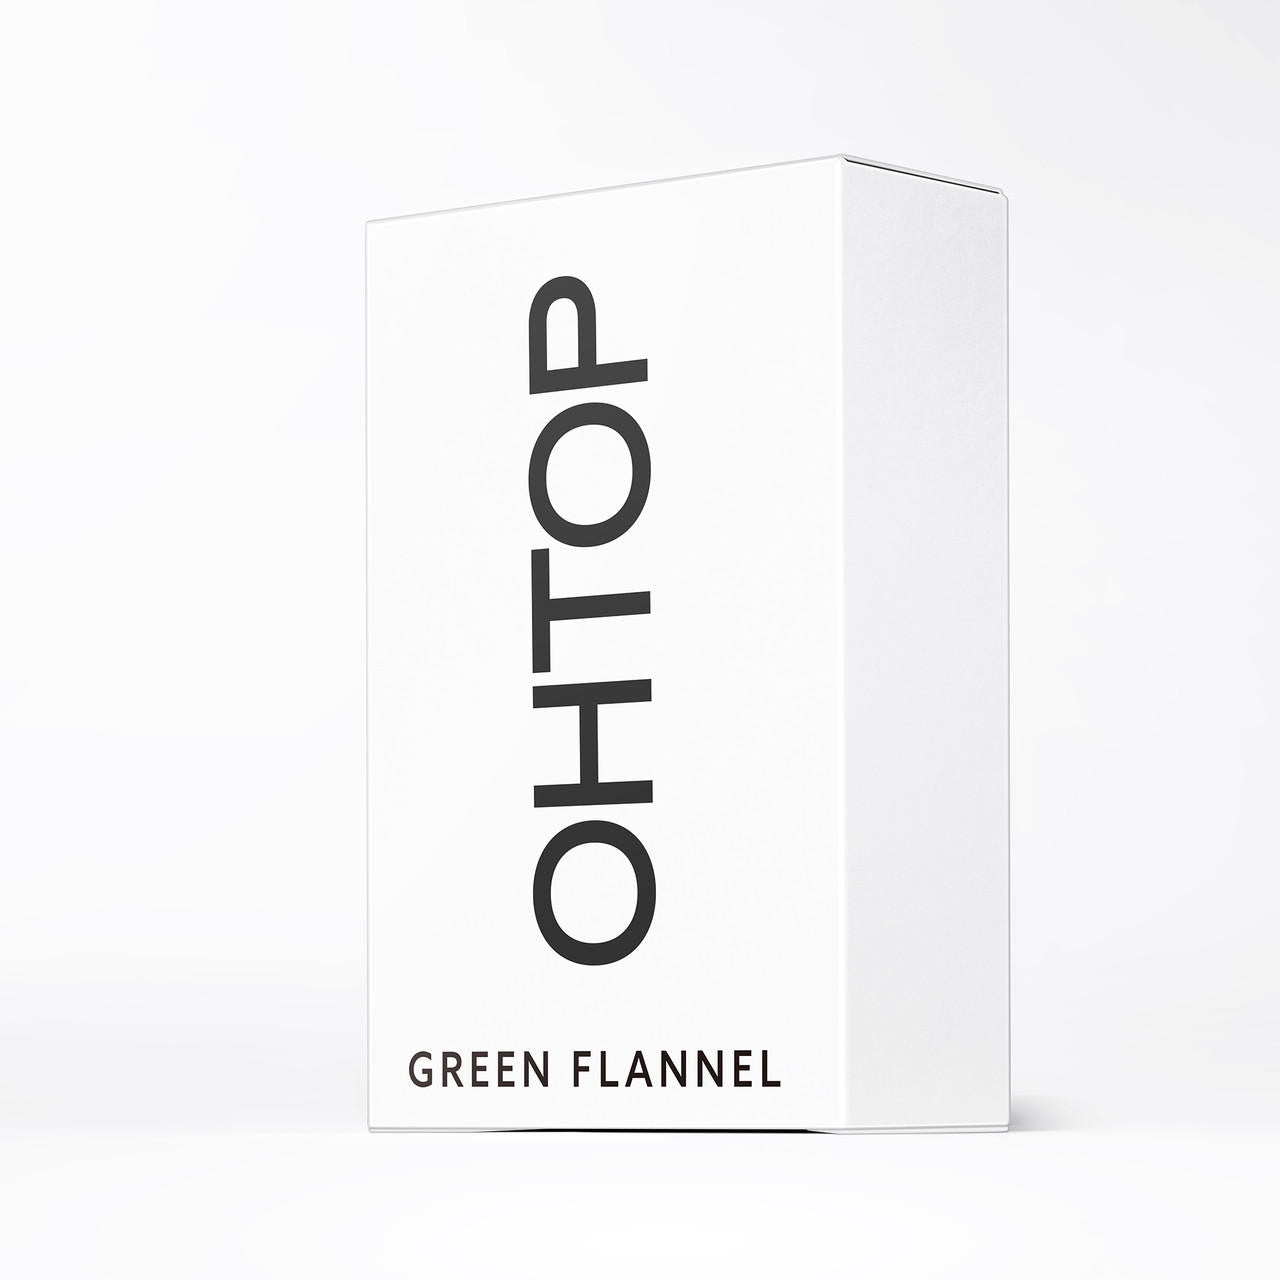 OHTOP OTHOP Green Flannel Eau de Parfum 